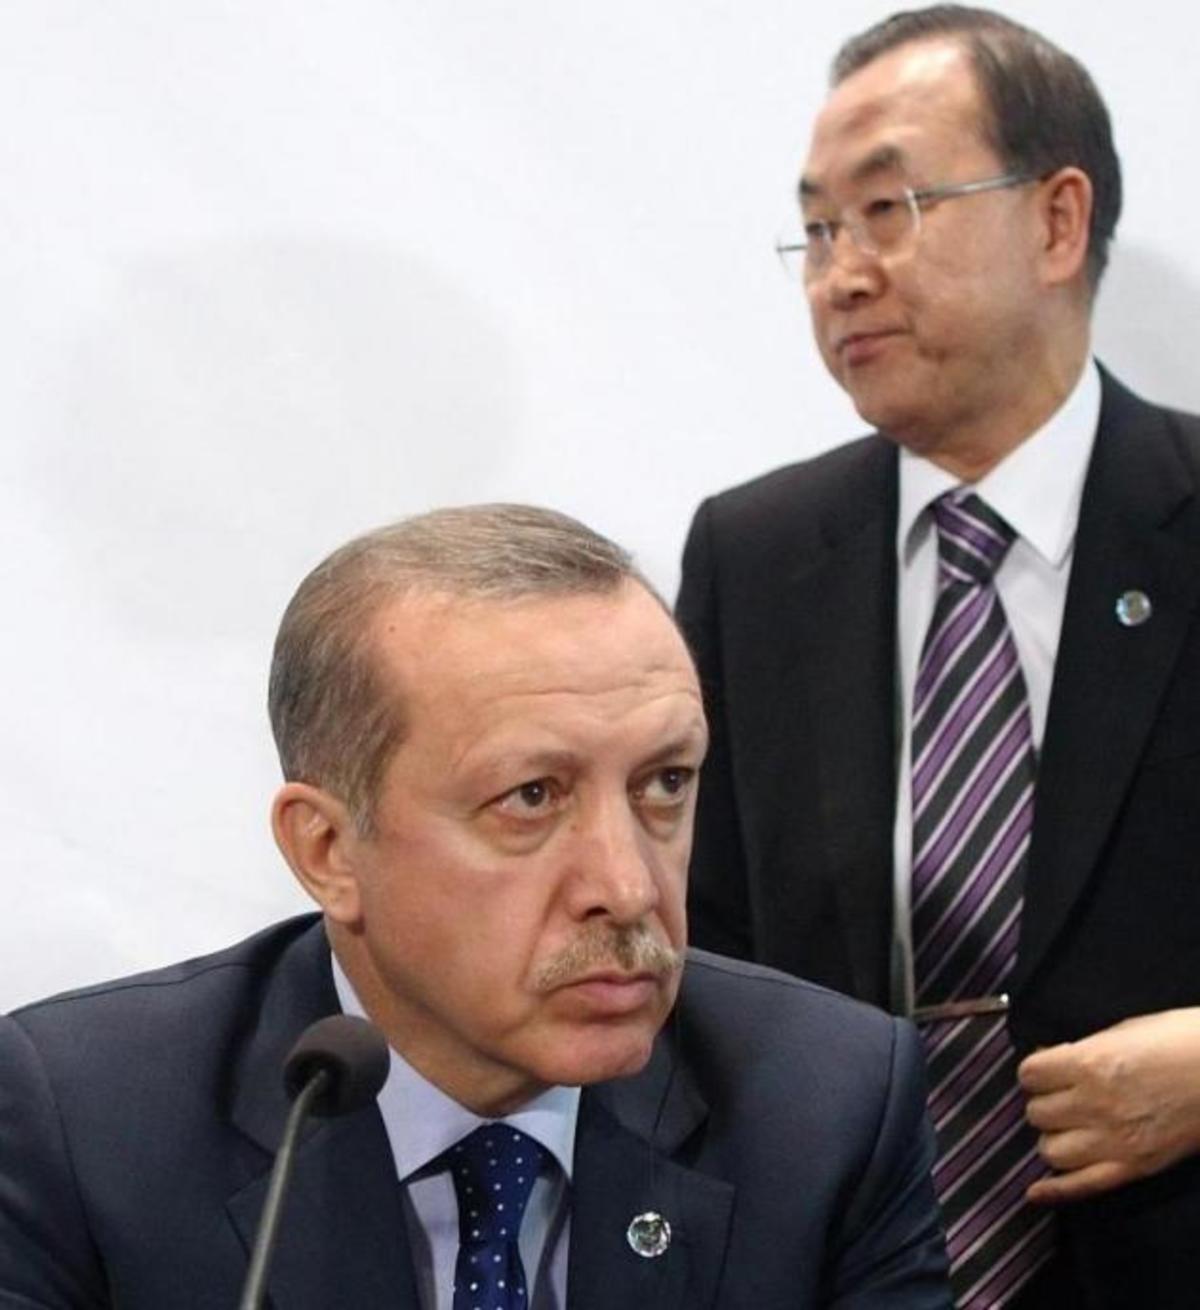 ΟΗΕ: “Επιβλαβής και προσβλητικός ο Ερντογάν”